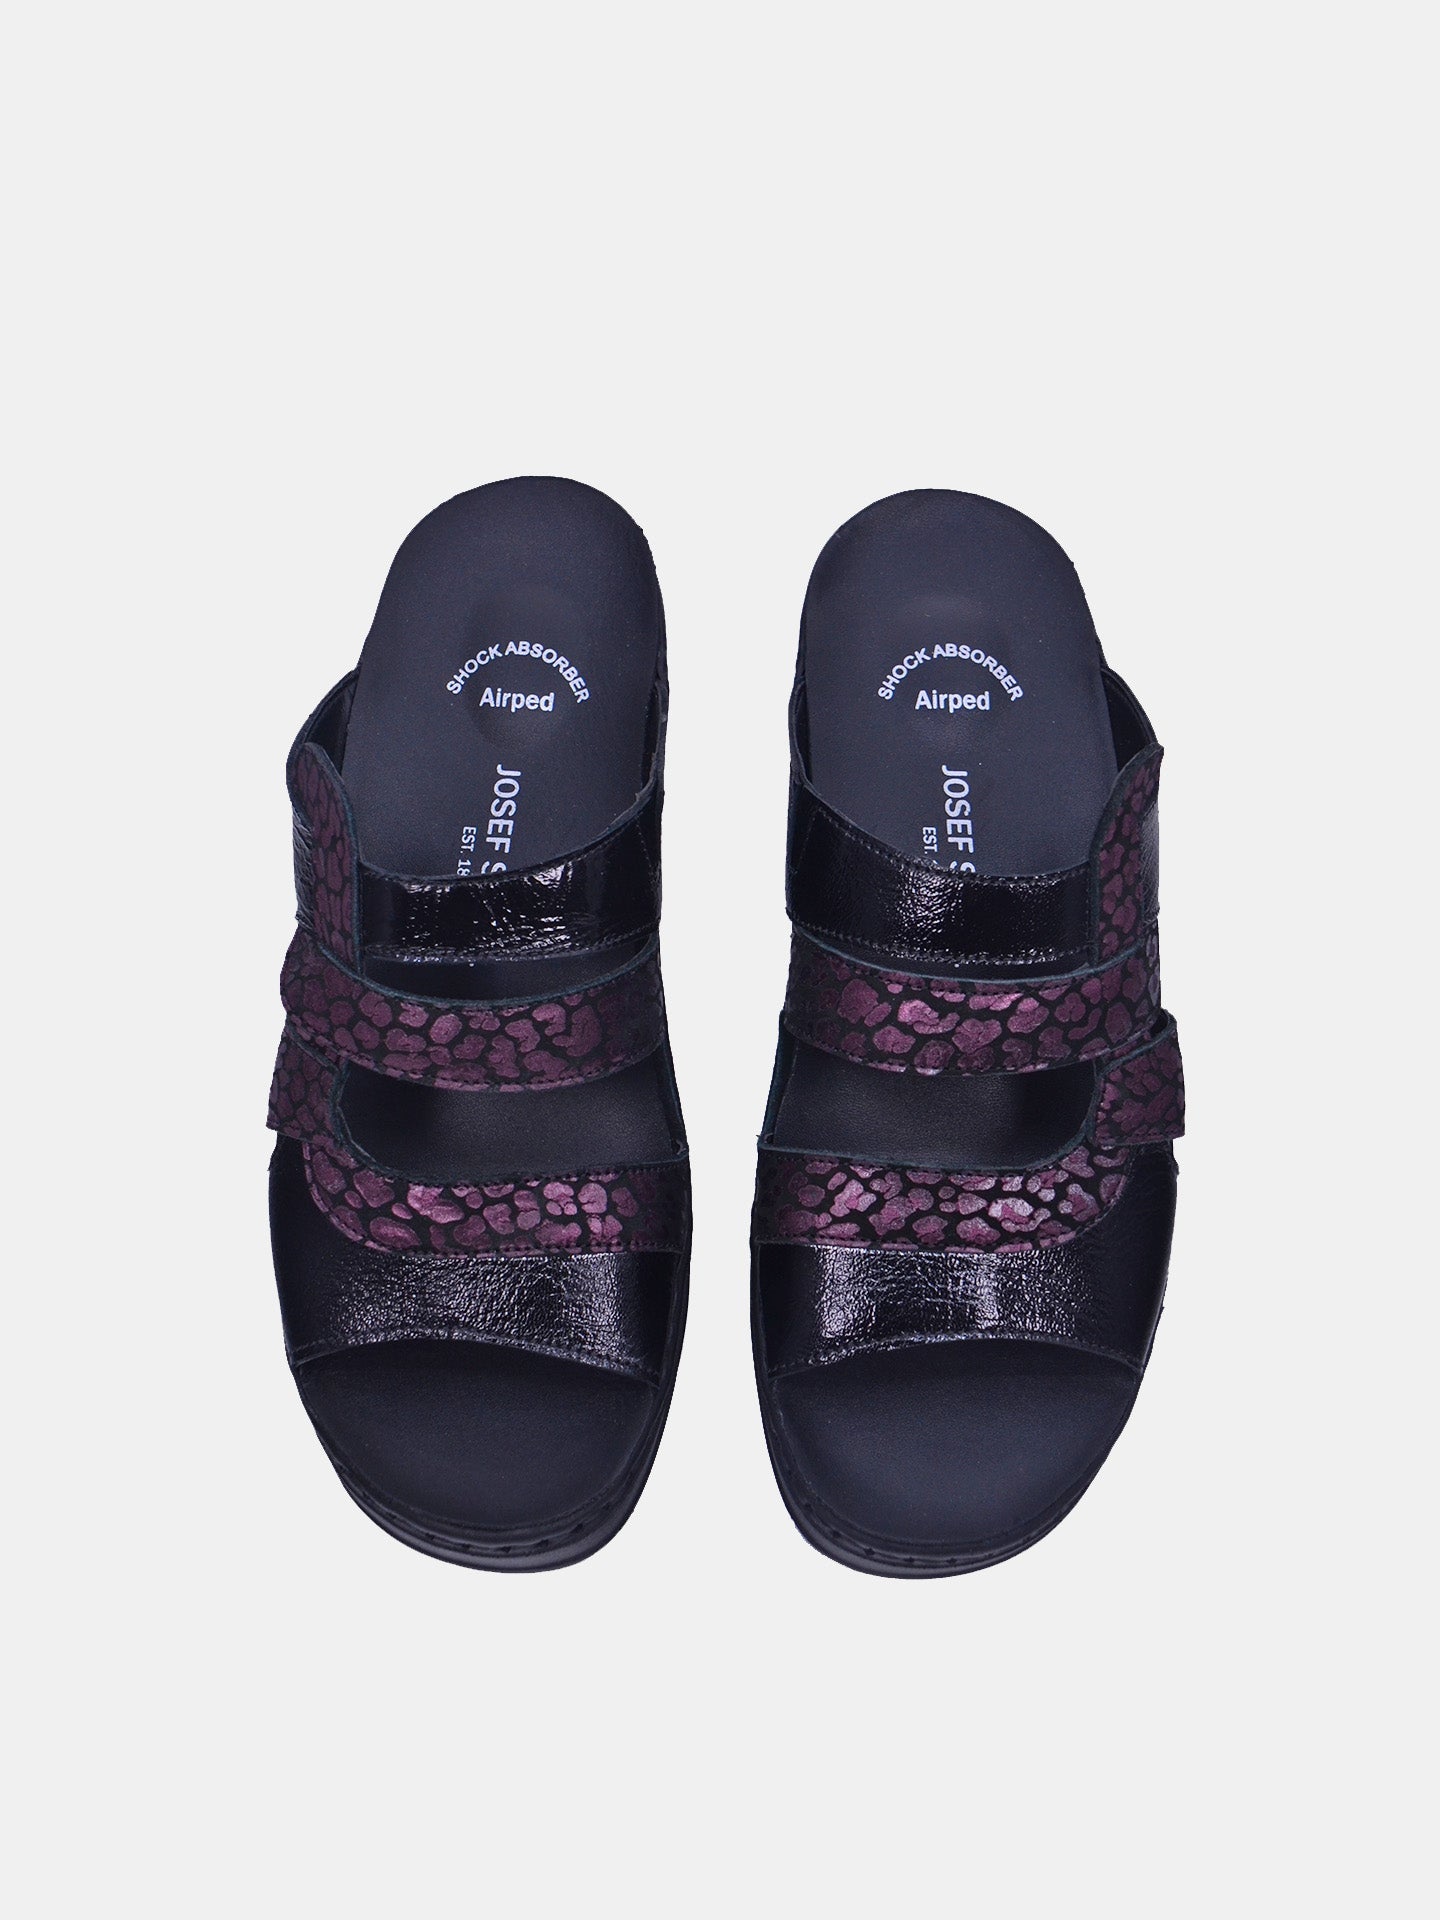 Josef Seibel 08847 Women's Flat Sandals #color_Maroon